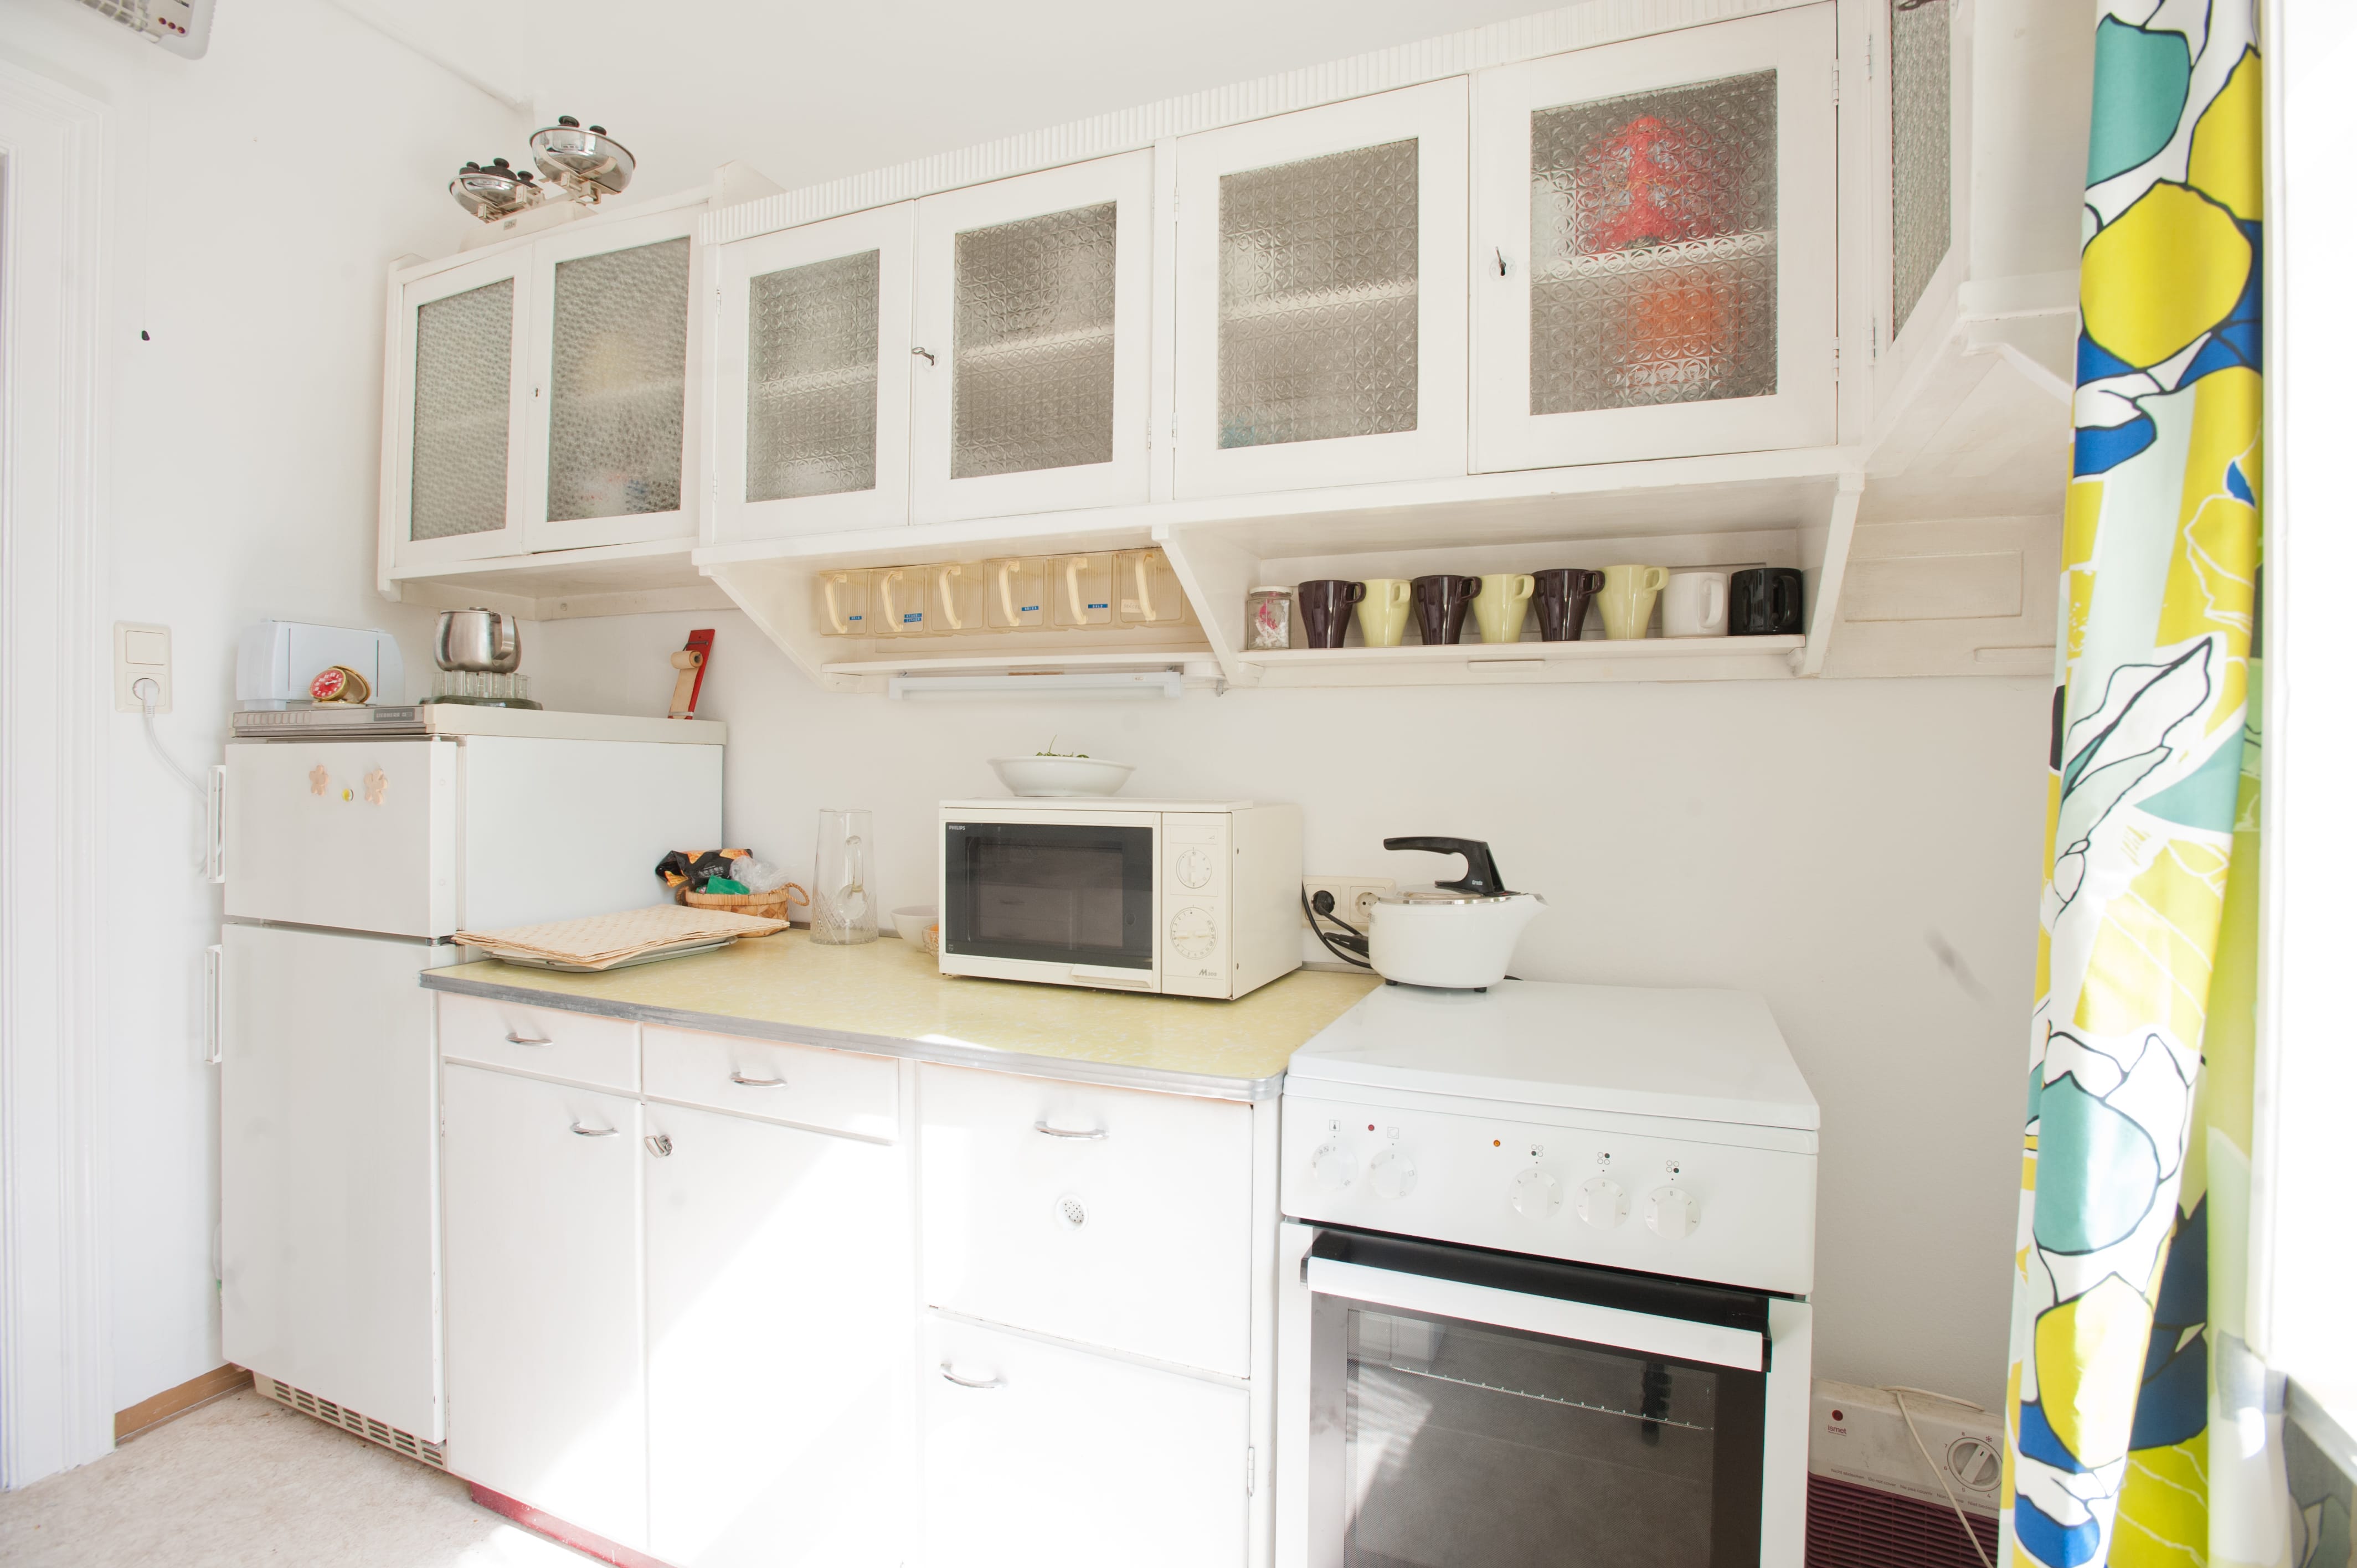 Linke Küchenzeile mit Mikrowelle und Ofen